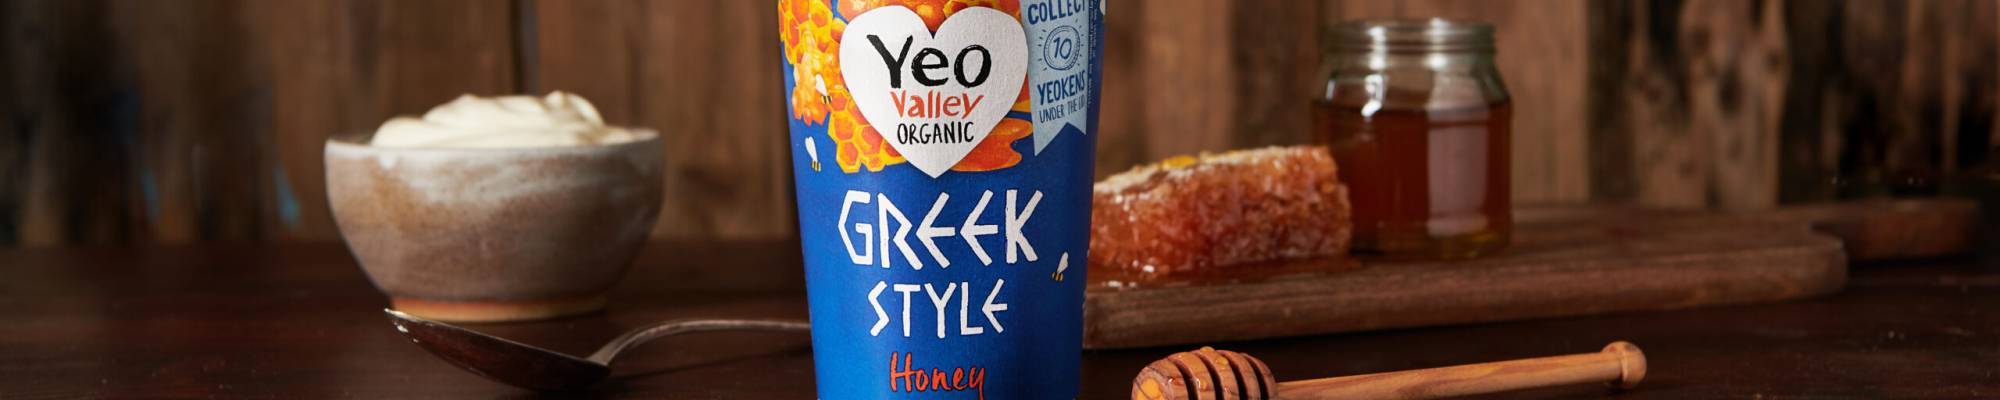 Yeo Valley Organic Greek Honey yogurt